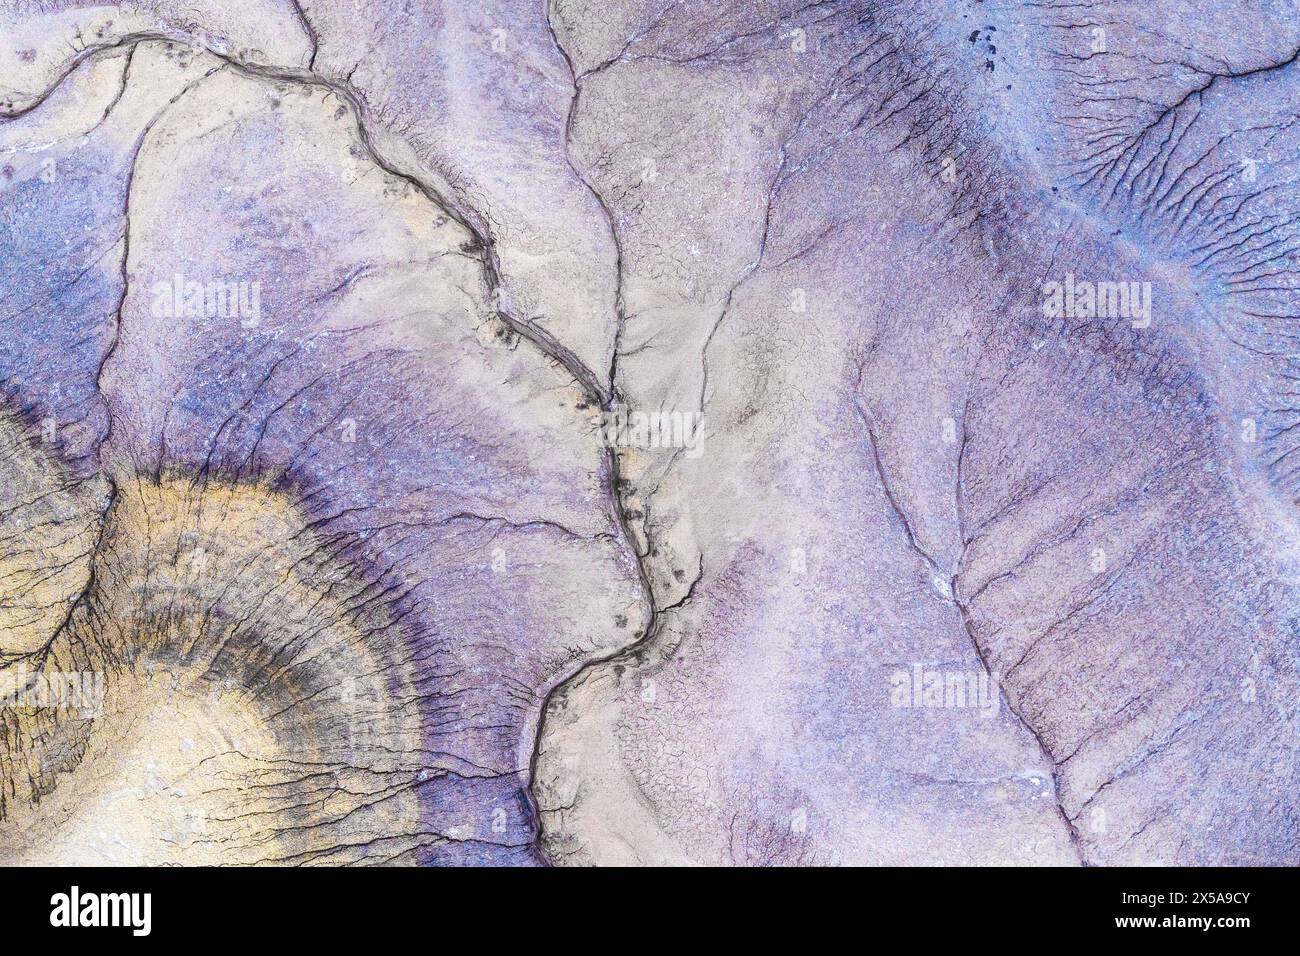 Vista aerea che mostra le intricate texture e i motivi del paesaggio desertico dello Utah, riflettendo la bellezza naturale e la diversità geologica di Foto Stock